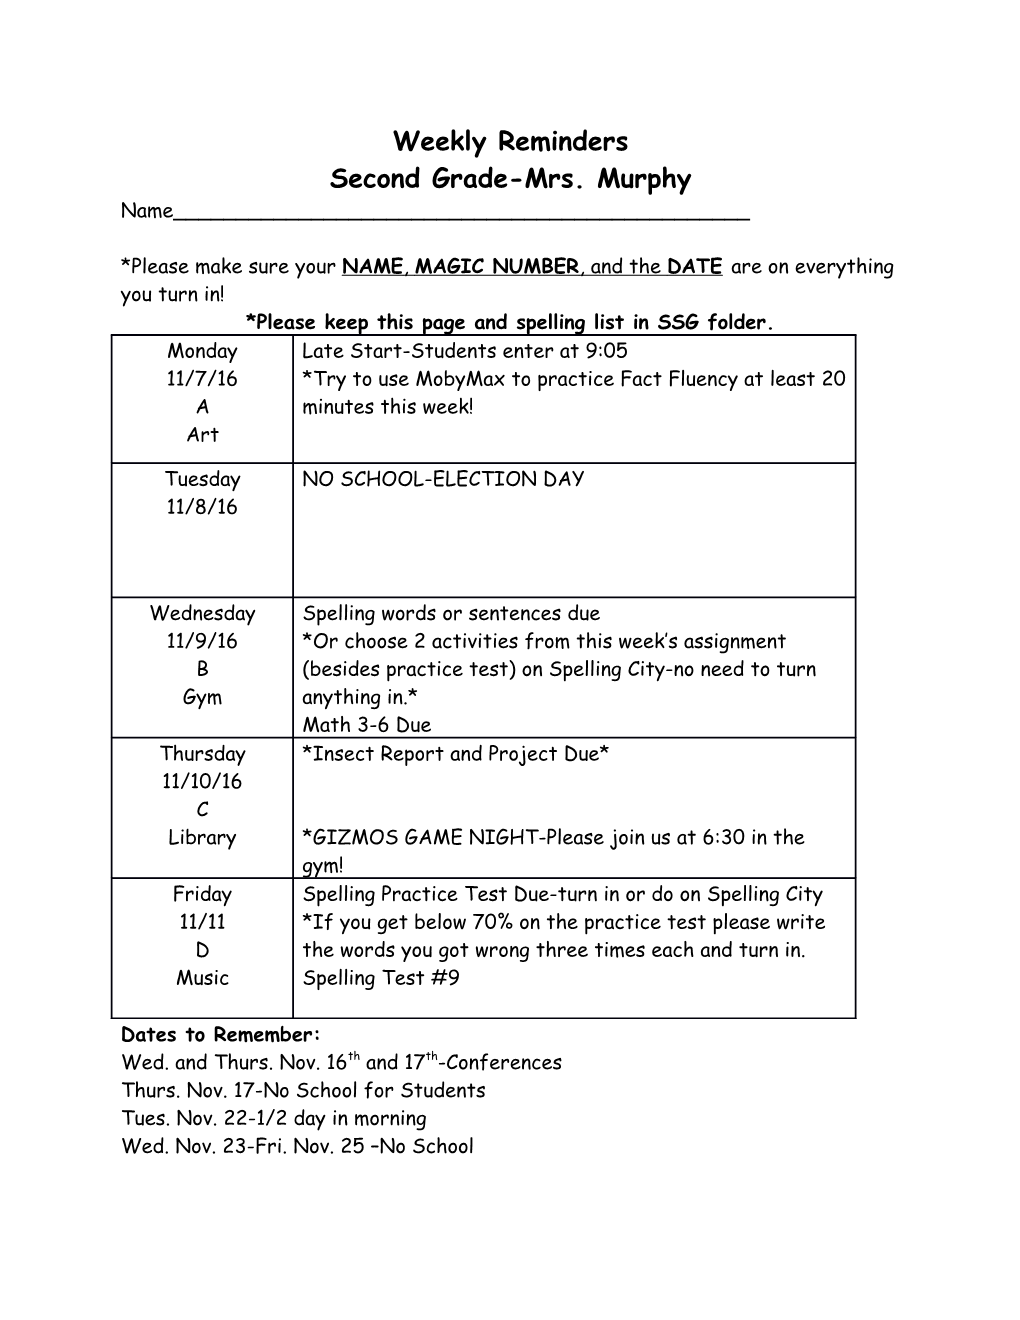 Second Grade-Mrs. Murphy